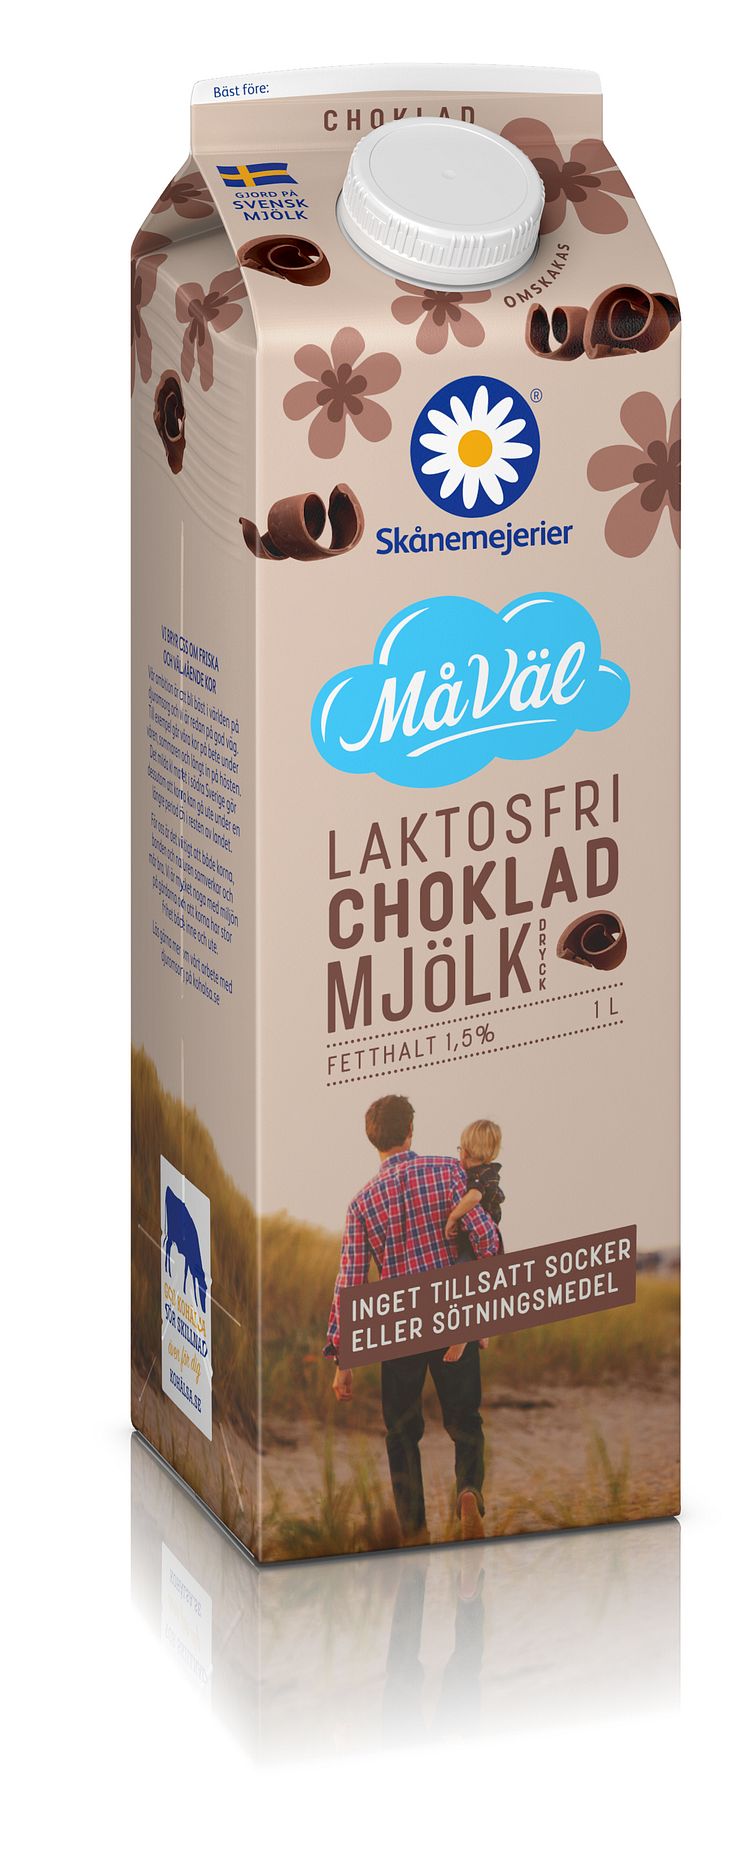 Skånemejerier MåVäl Laktosfri Chokladmjölk kommer att finns i enlitersförpackning och går att hitta i mejerikylen på ICA, Coop, City Gross, Willys och Hemköp i hela Sverige från och med vecka 19.